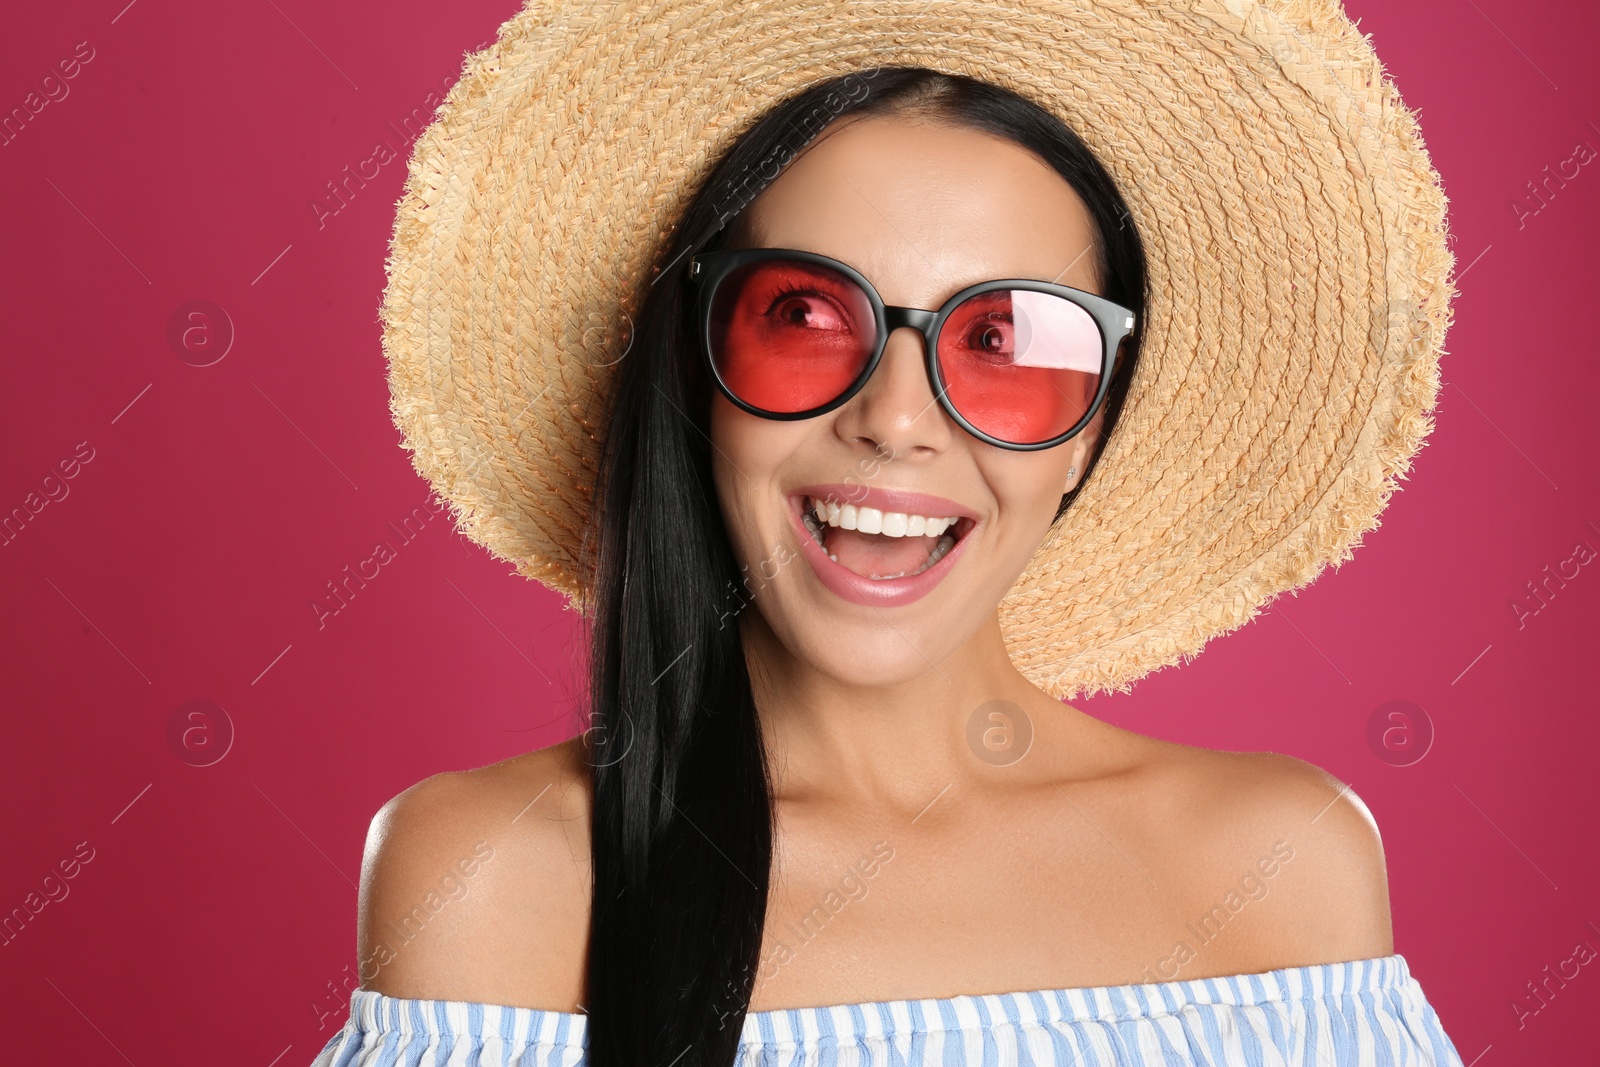 Photo of Beautiful woman wearing sunglasses on pink background, closeup